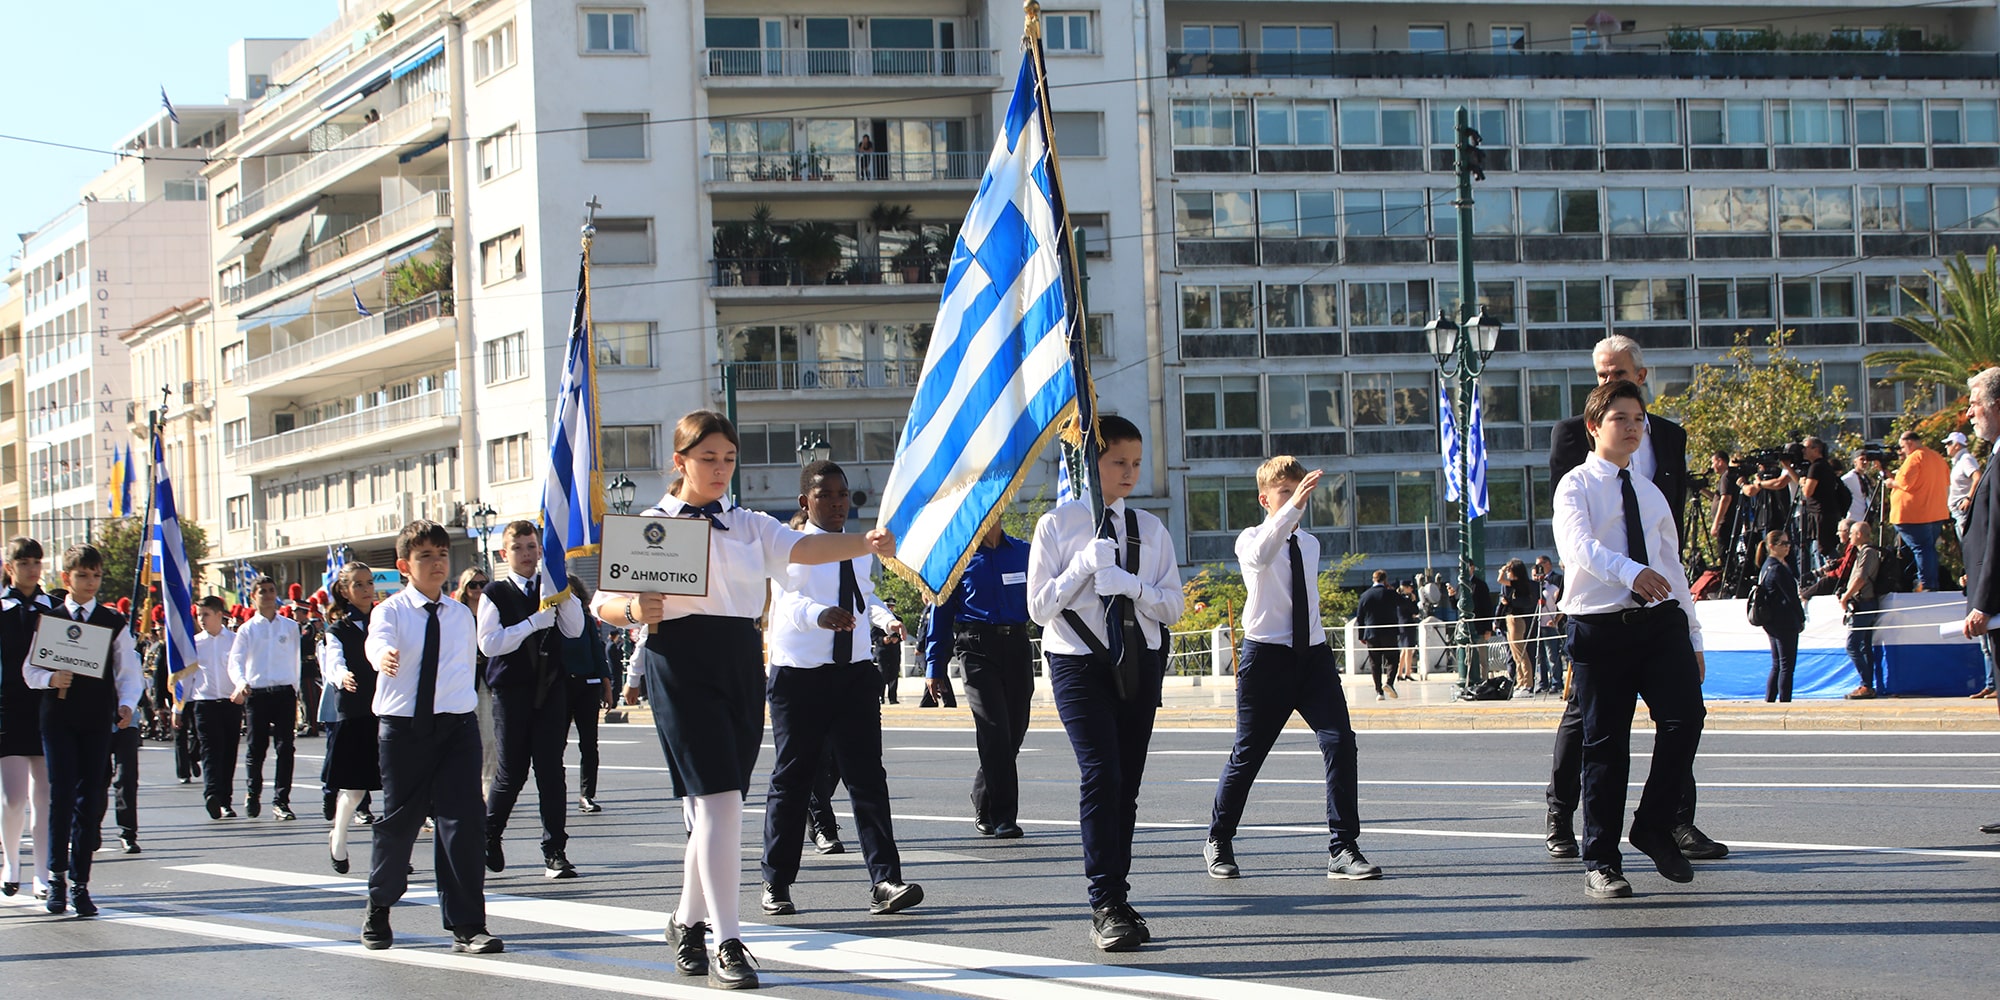 Η μαθητική παρέλαση στην Αθήνα